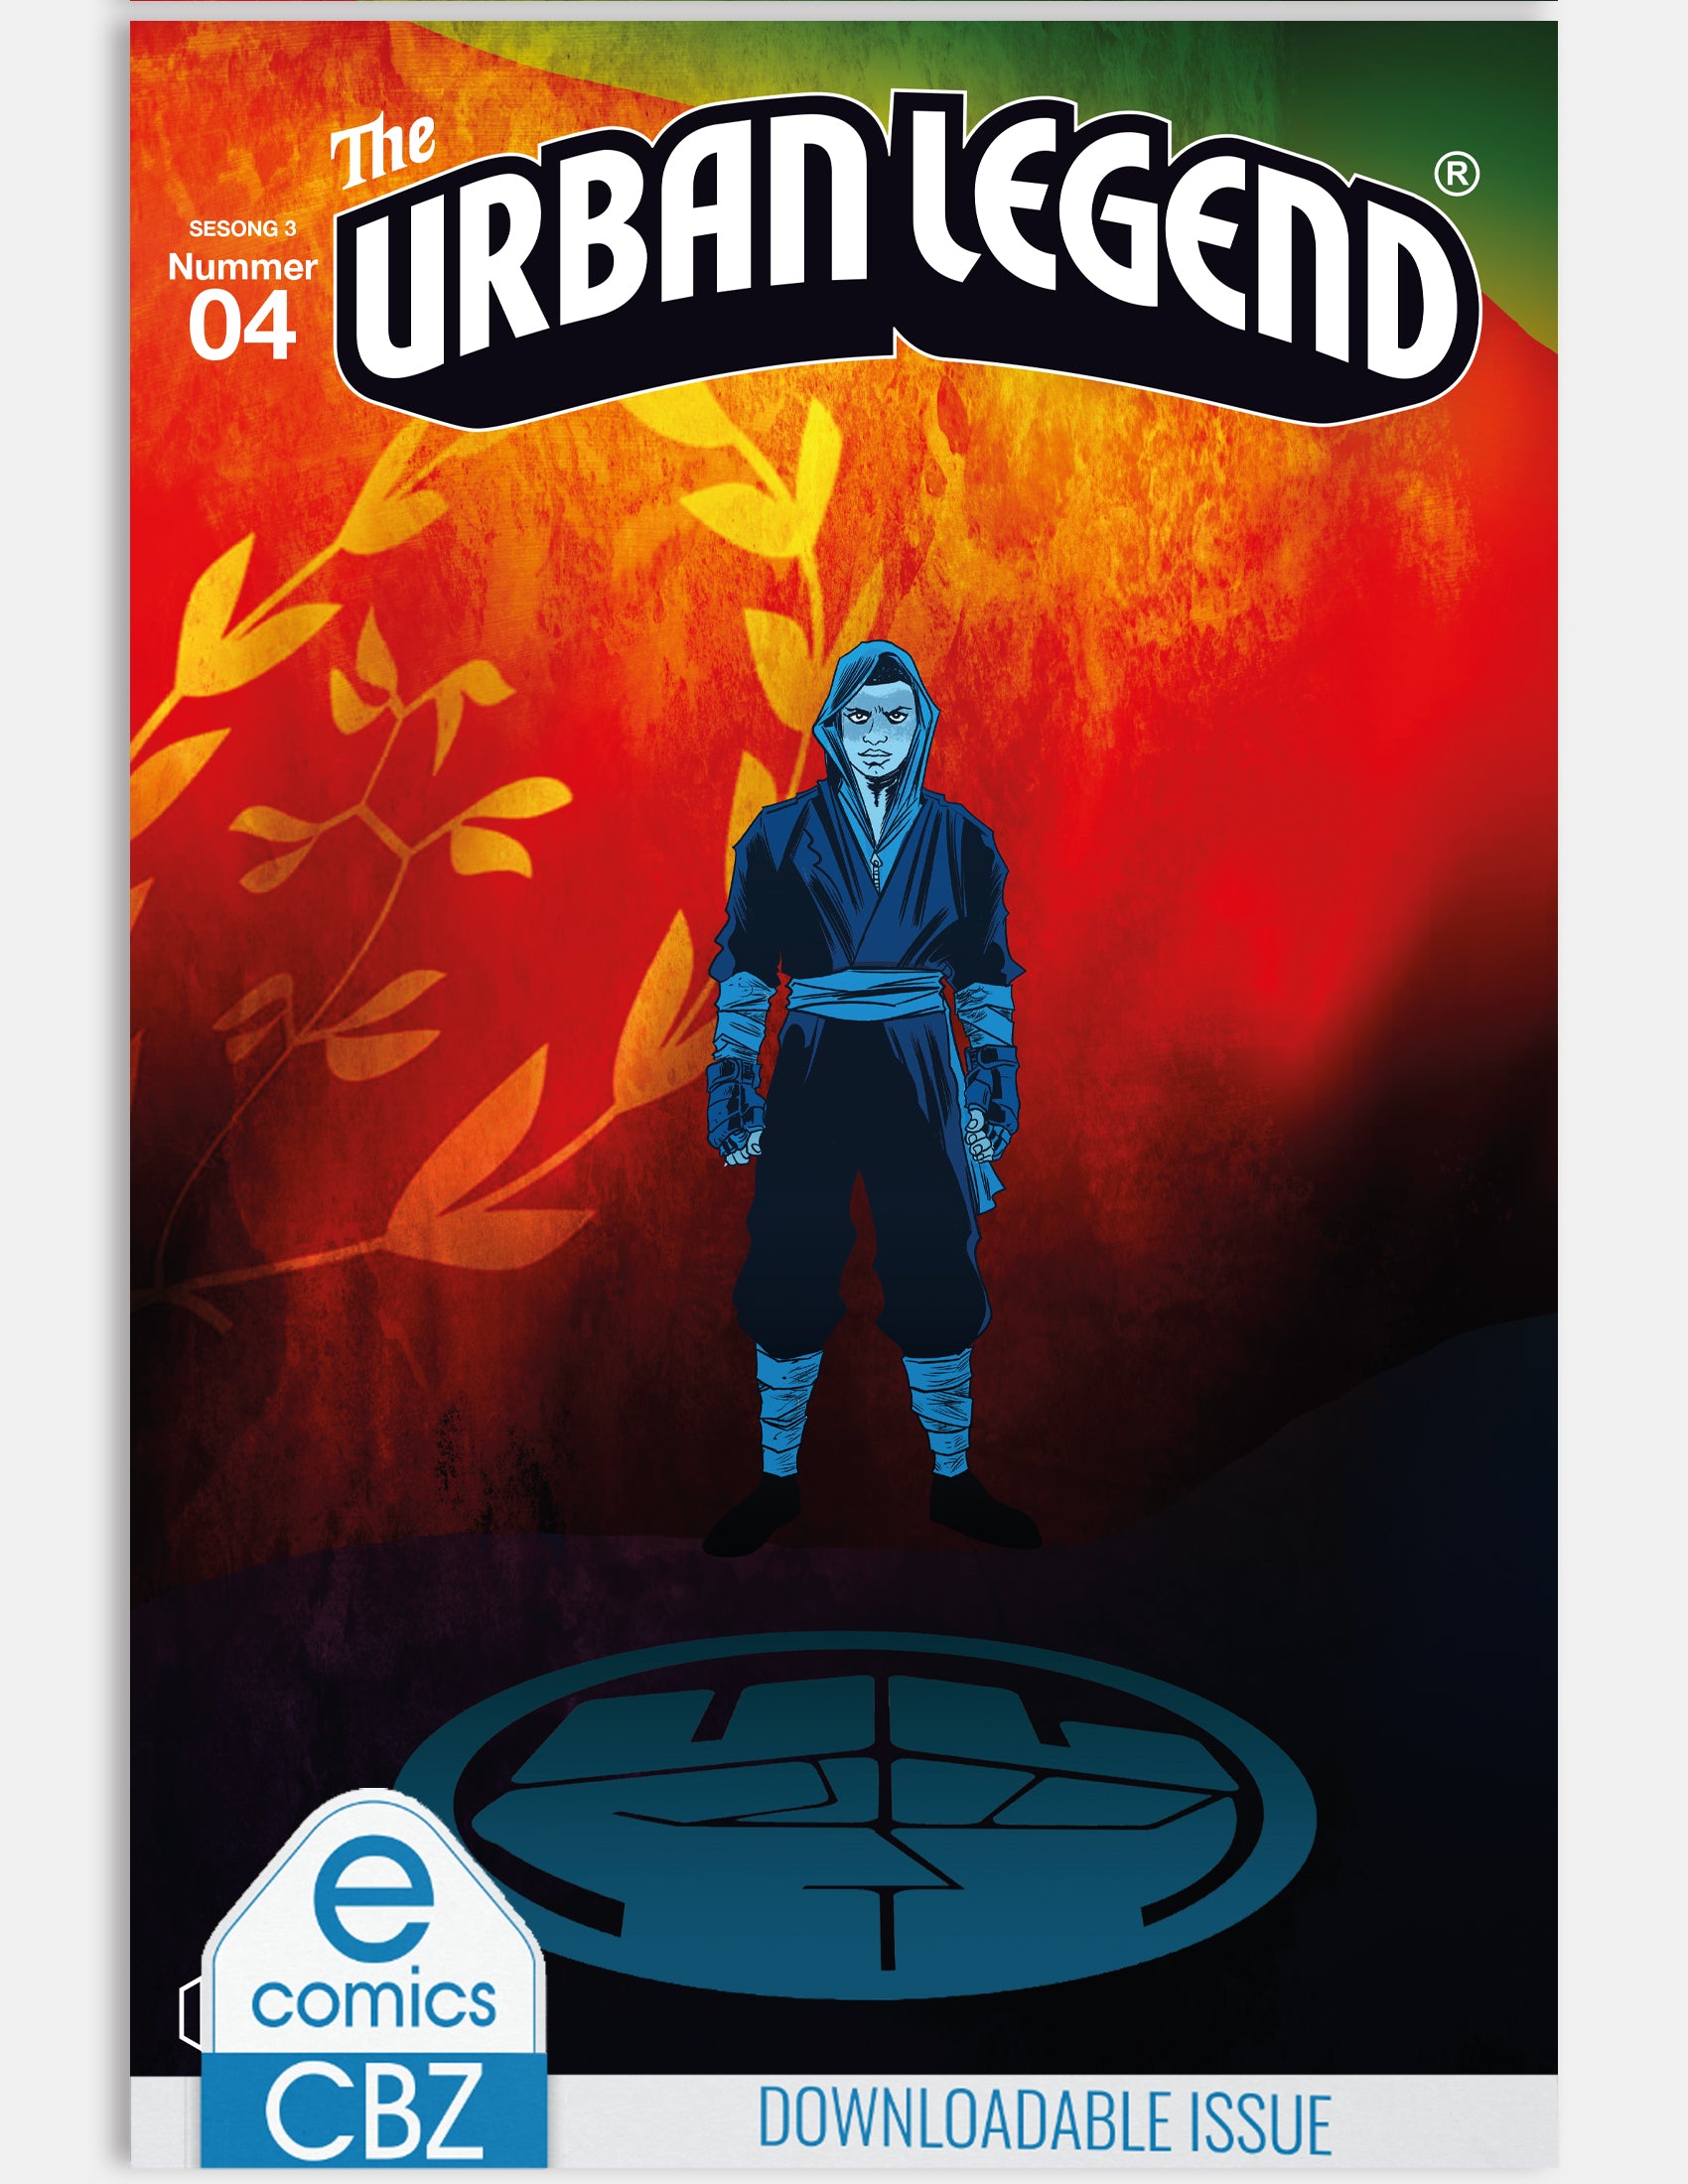 The Urban Legend - Origin (Issue 4 - Season 3) - Digital Issue